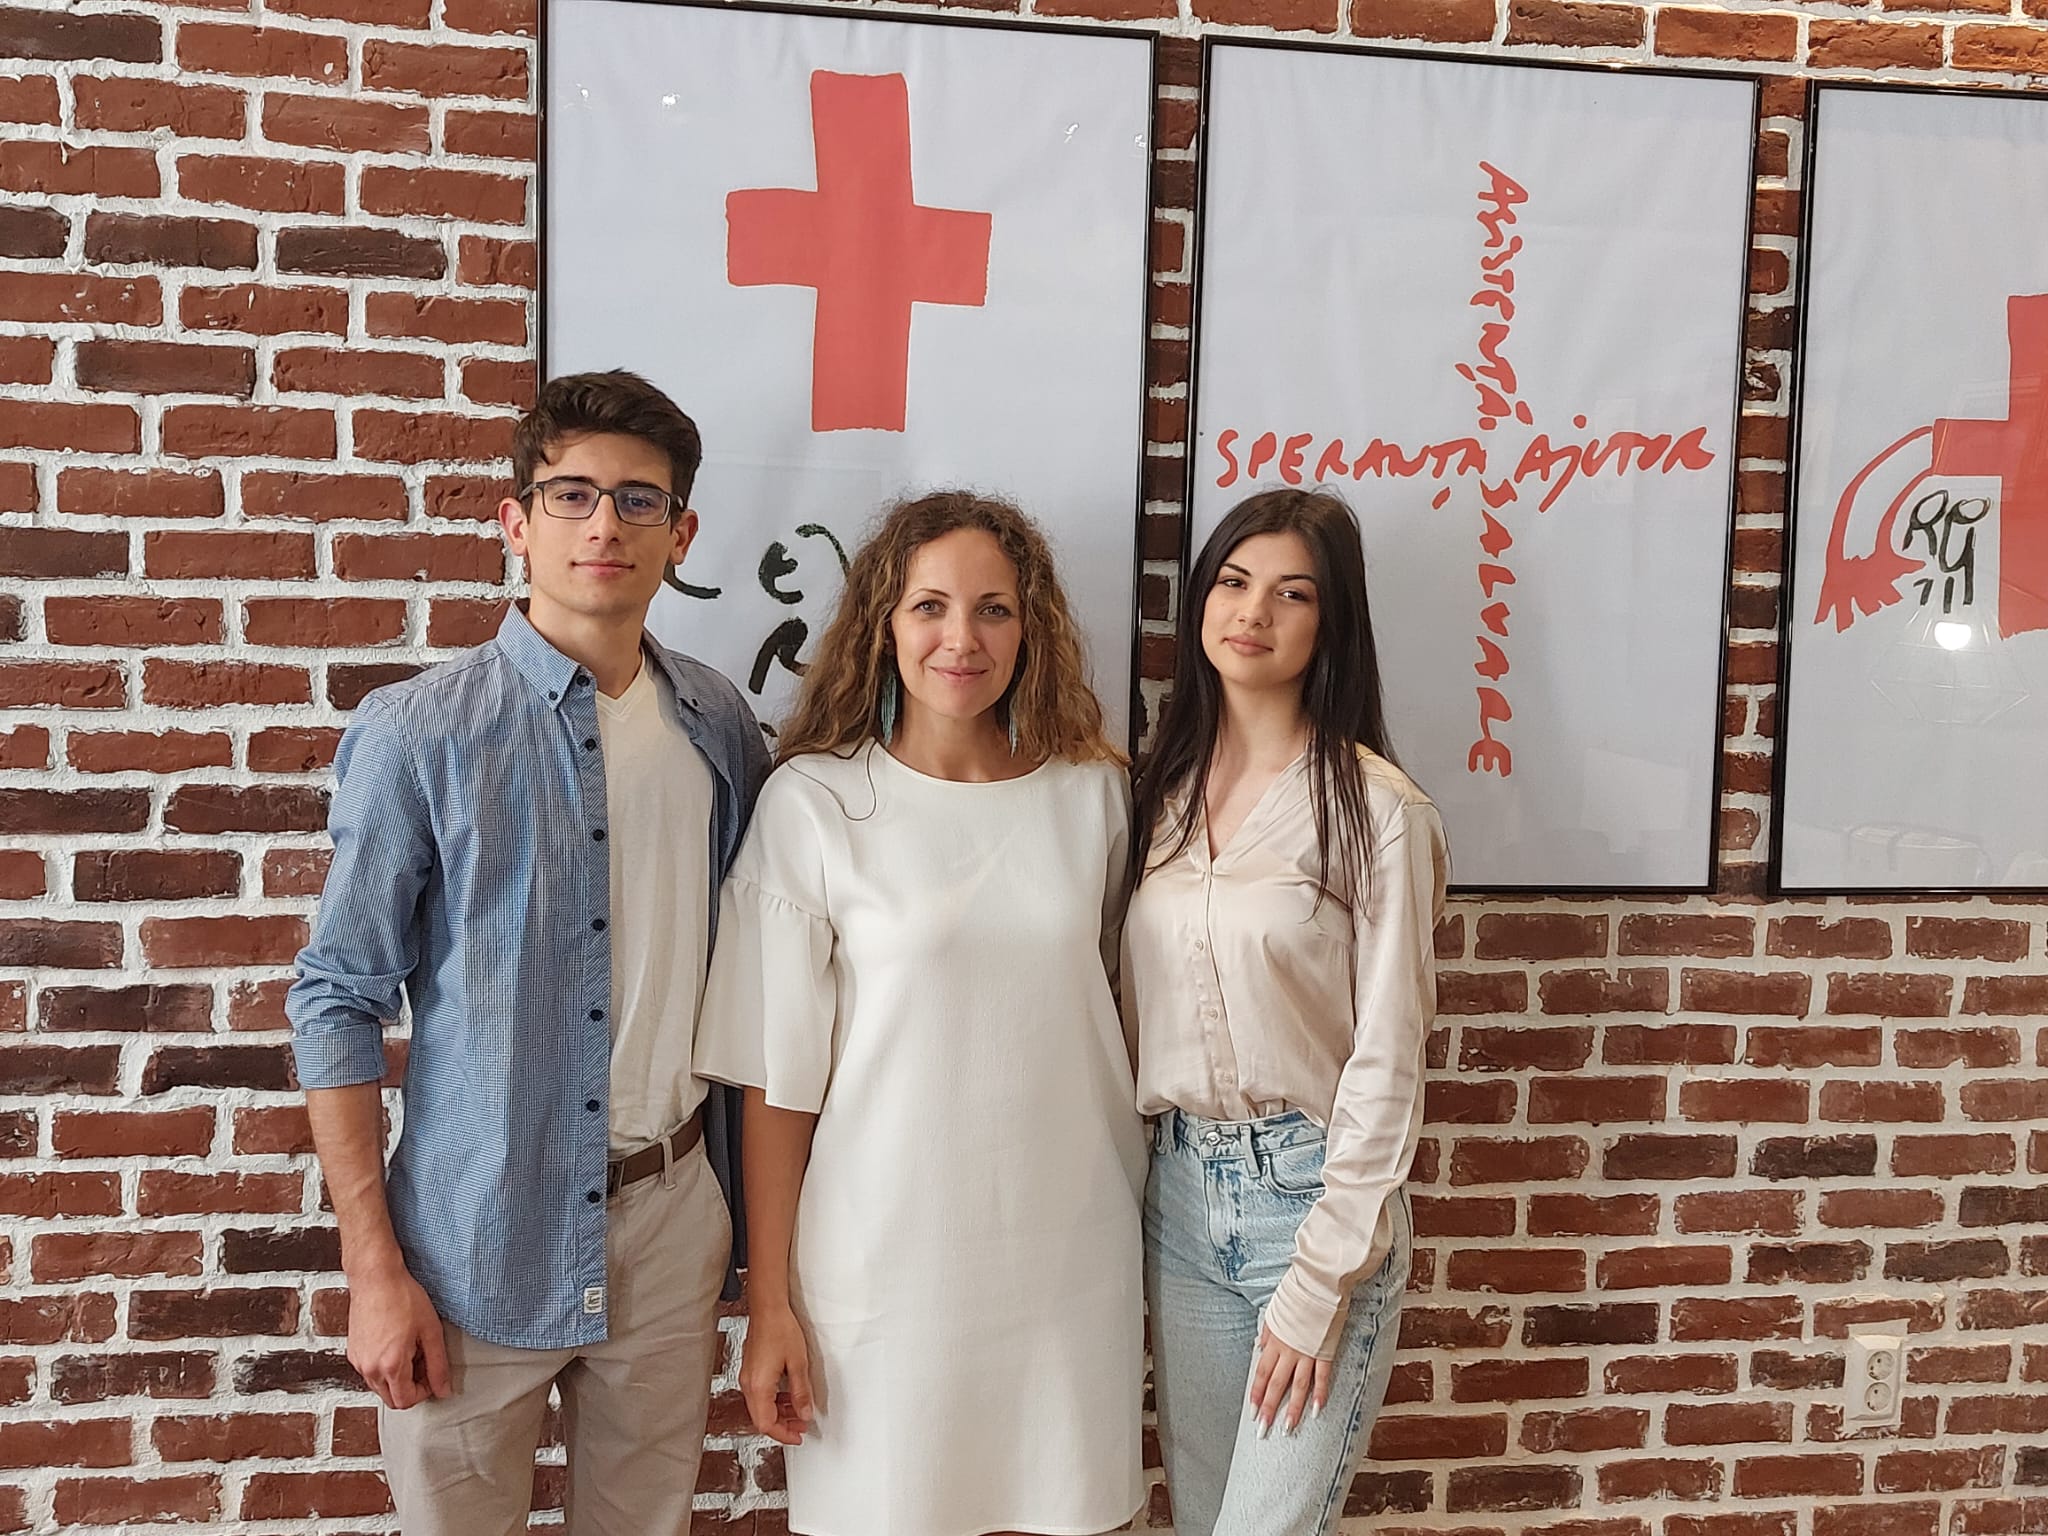 David și Daria, doi frați din Sibiu, și-au donat bursele și alocațiile Crucii Roșii pentru ca 12 profesori să învețe să acorde primul ajutor